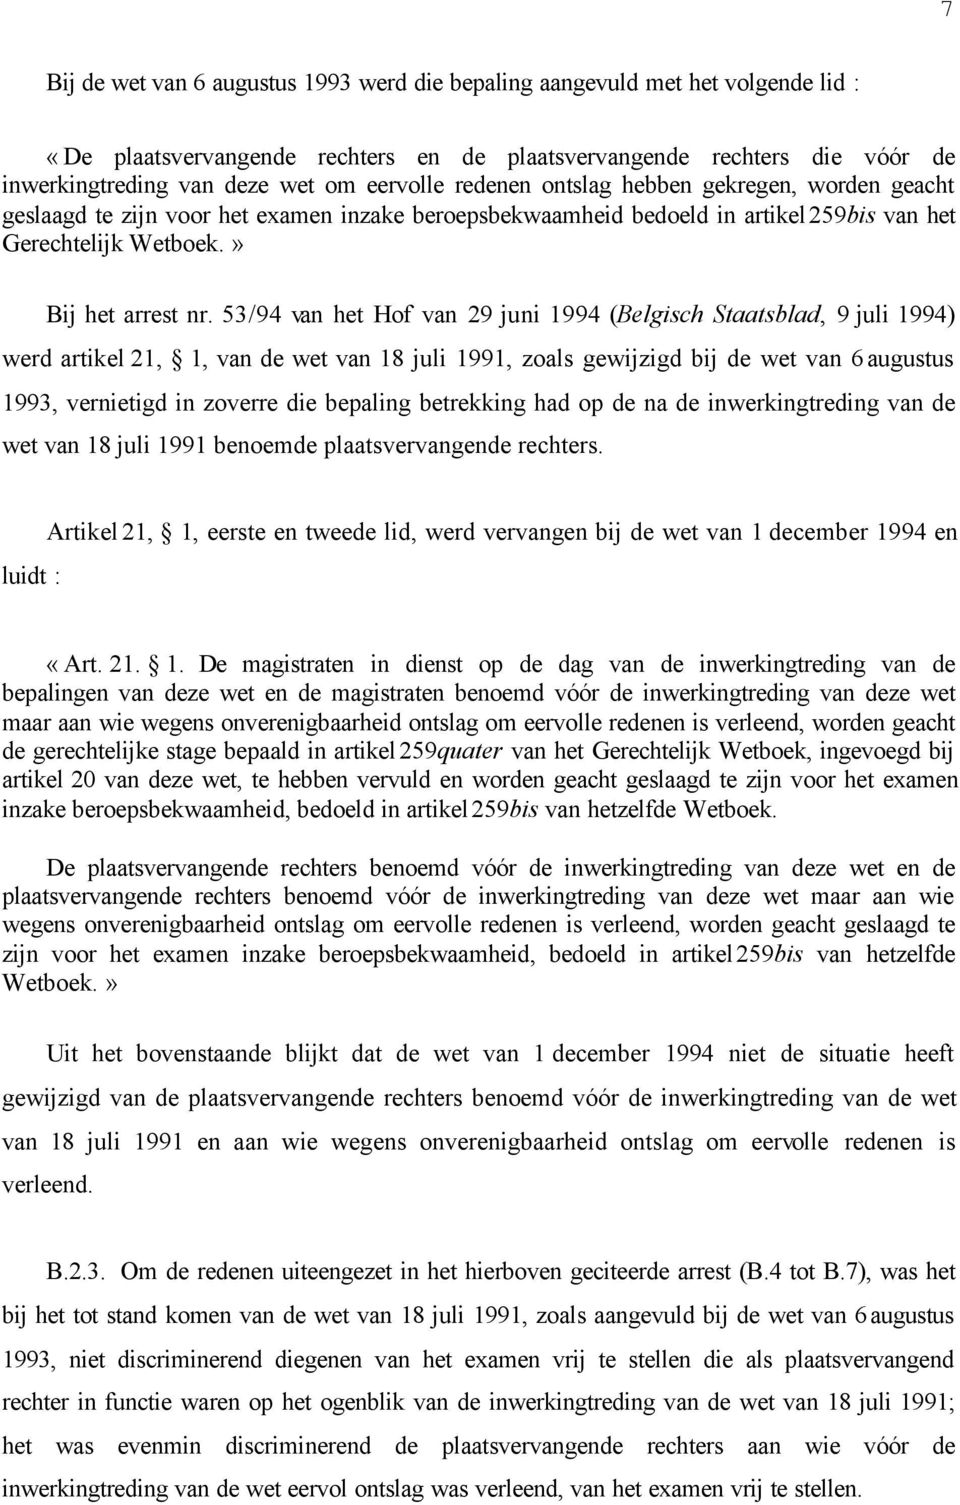 53/94 van het Hof van 29 juni 1994 (Belgisch Staatsblad, 9 juli 1994) werd artikel 21, 1, van de wet van 18 juli 1991, zoals gewijzigd bij de wet van 6 augustus 1993, vernietigd in zoverre die